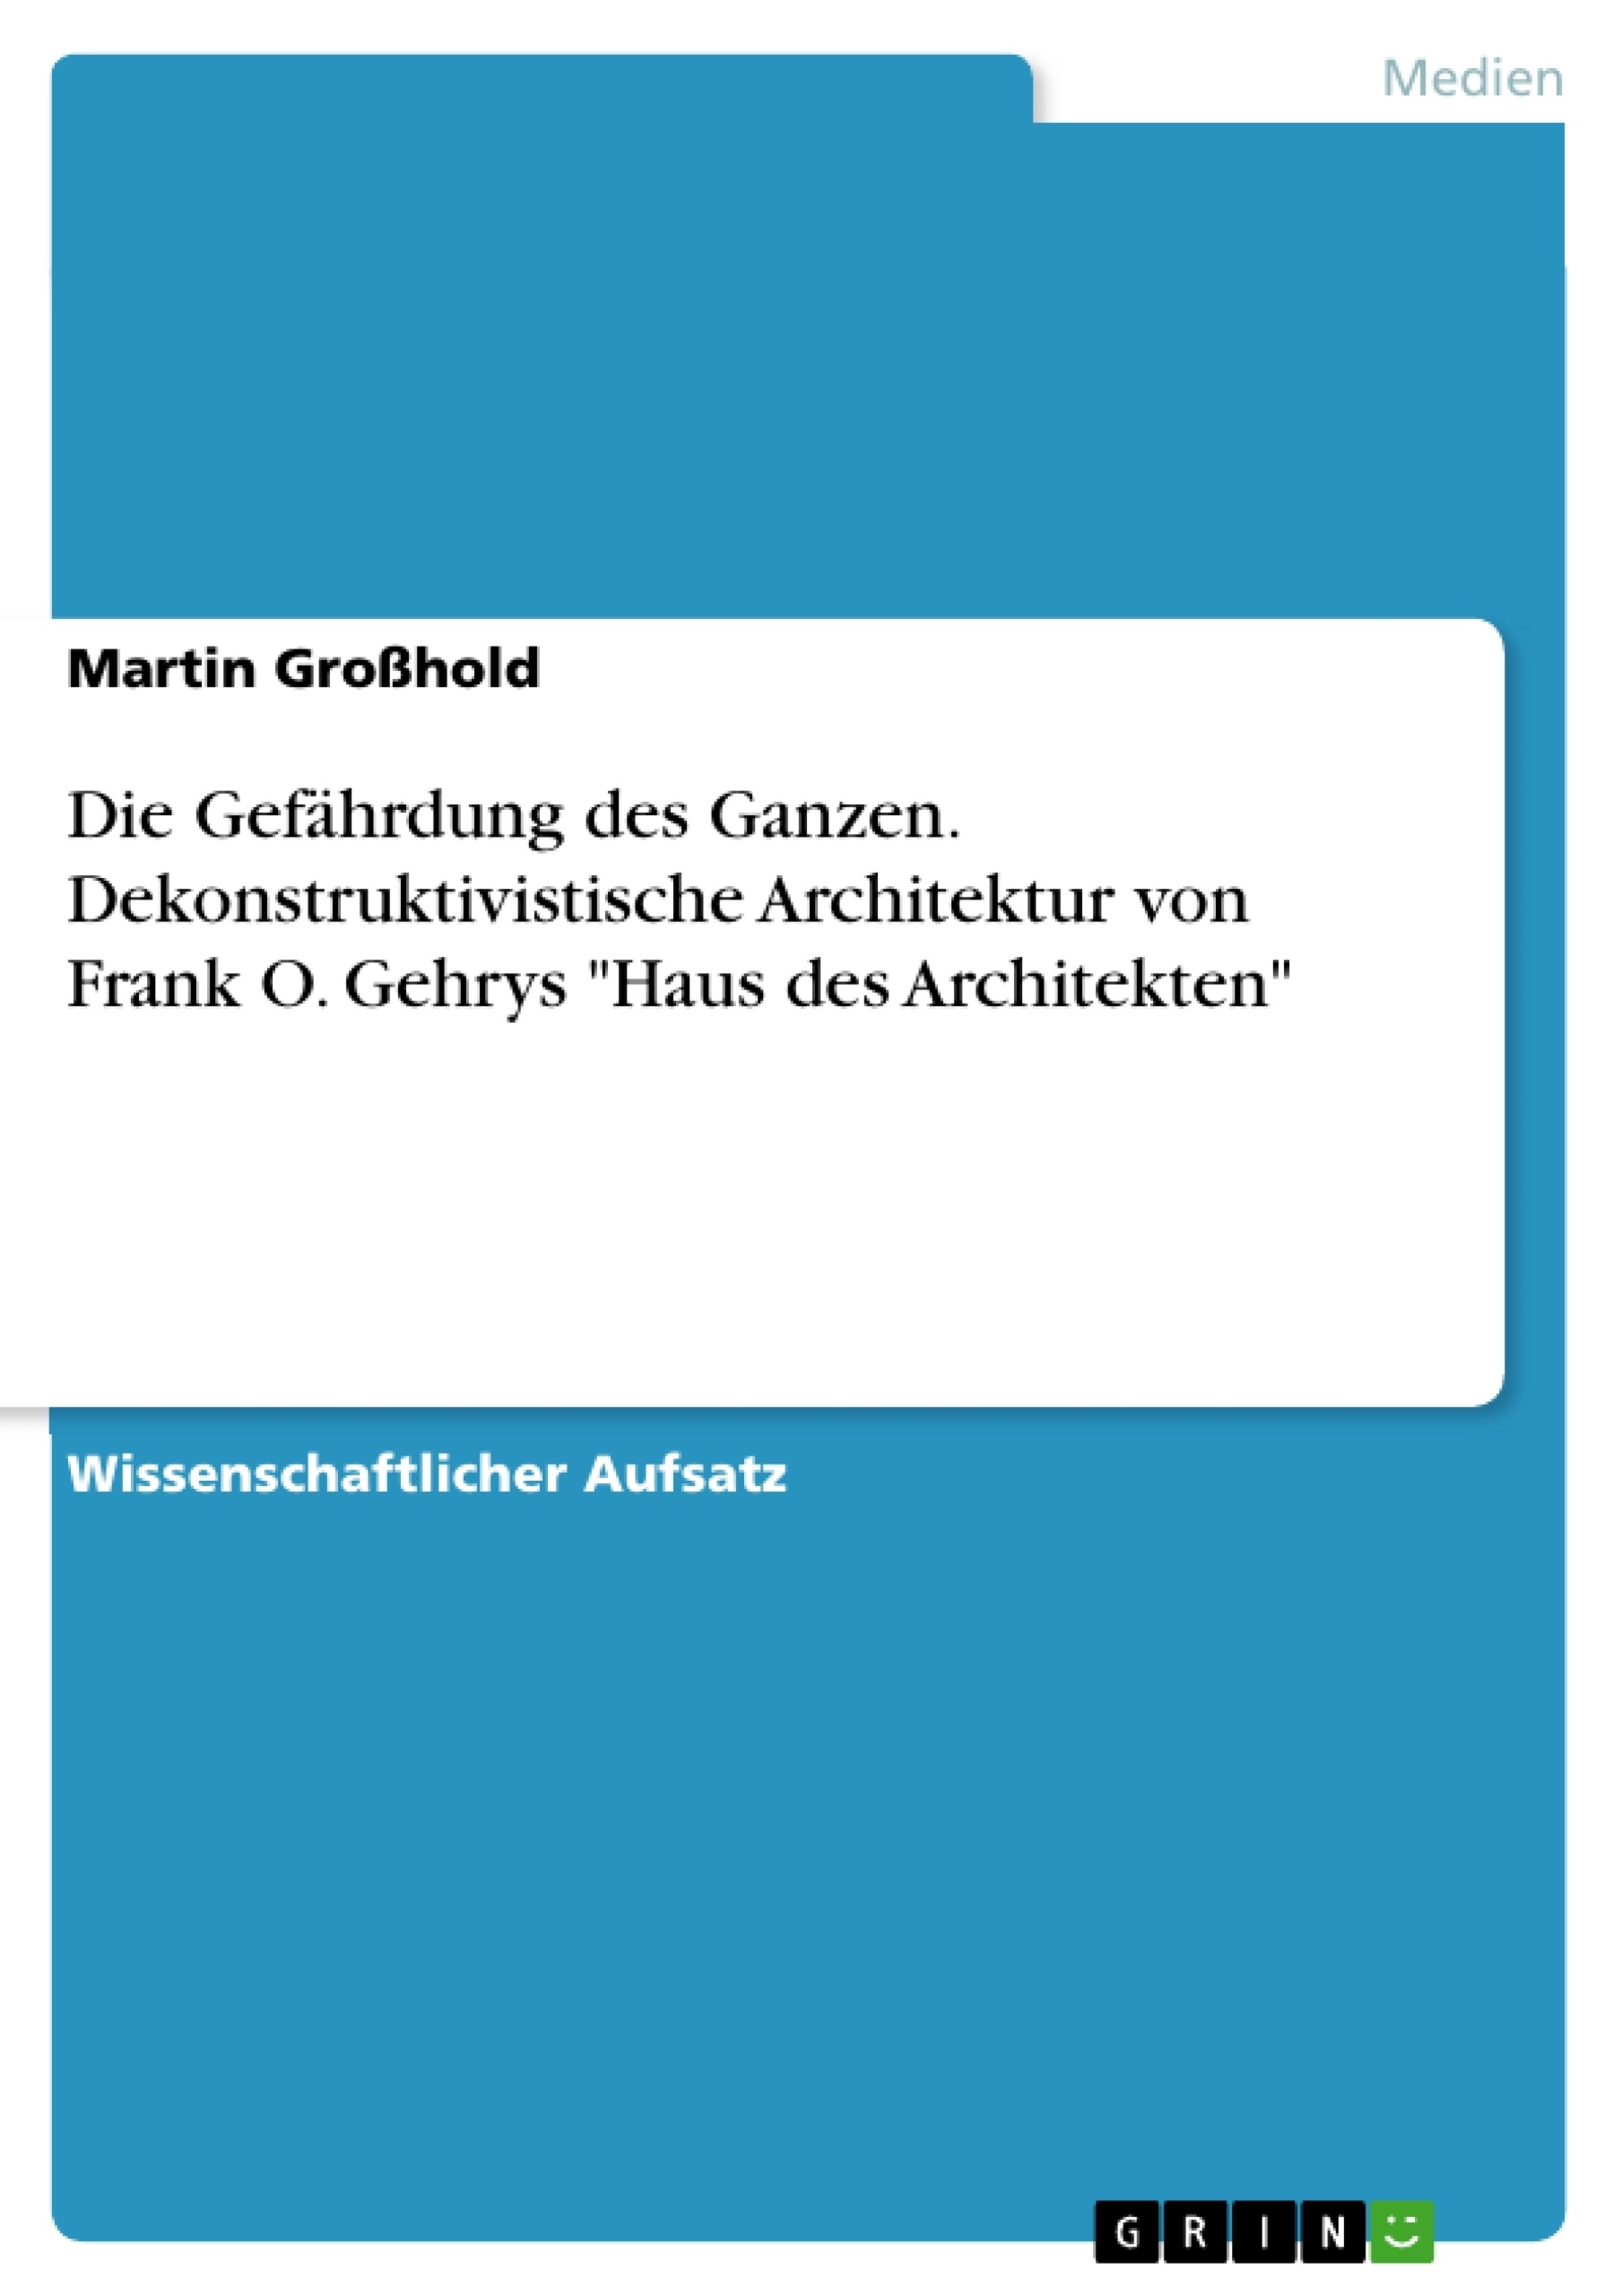 Titre: Die Gefährdung des Ganzen. Dekonstruktivistische Architektur von Frank O. Gehrys "Haus des Architekten"